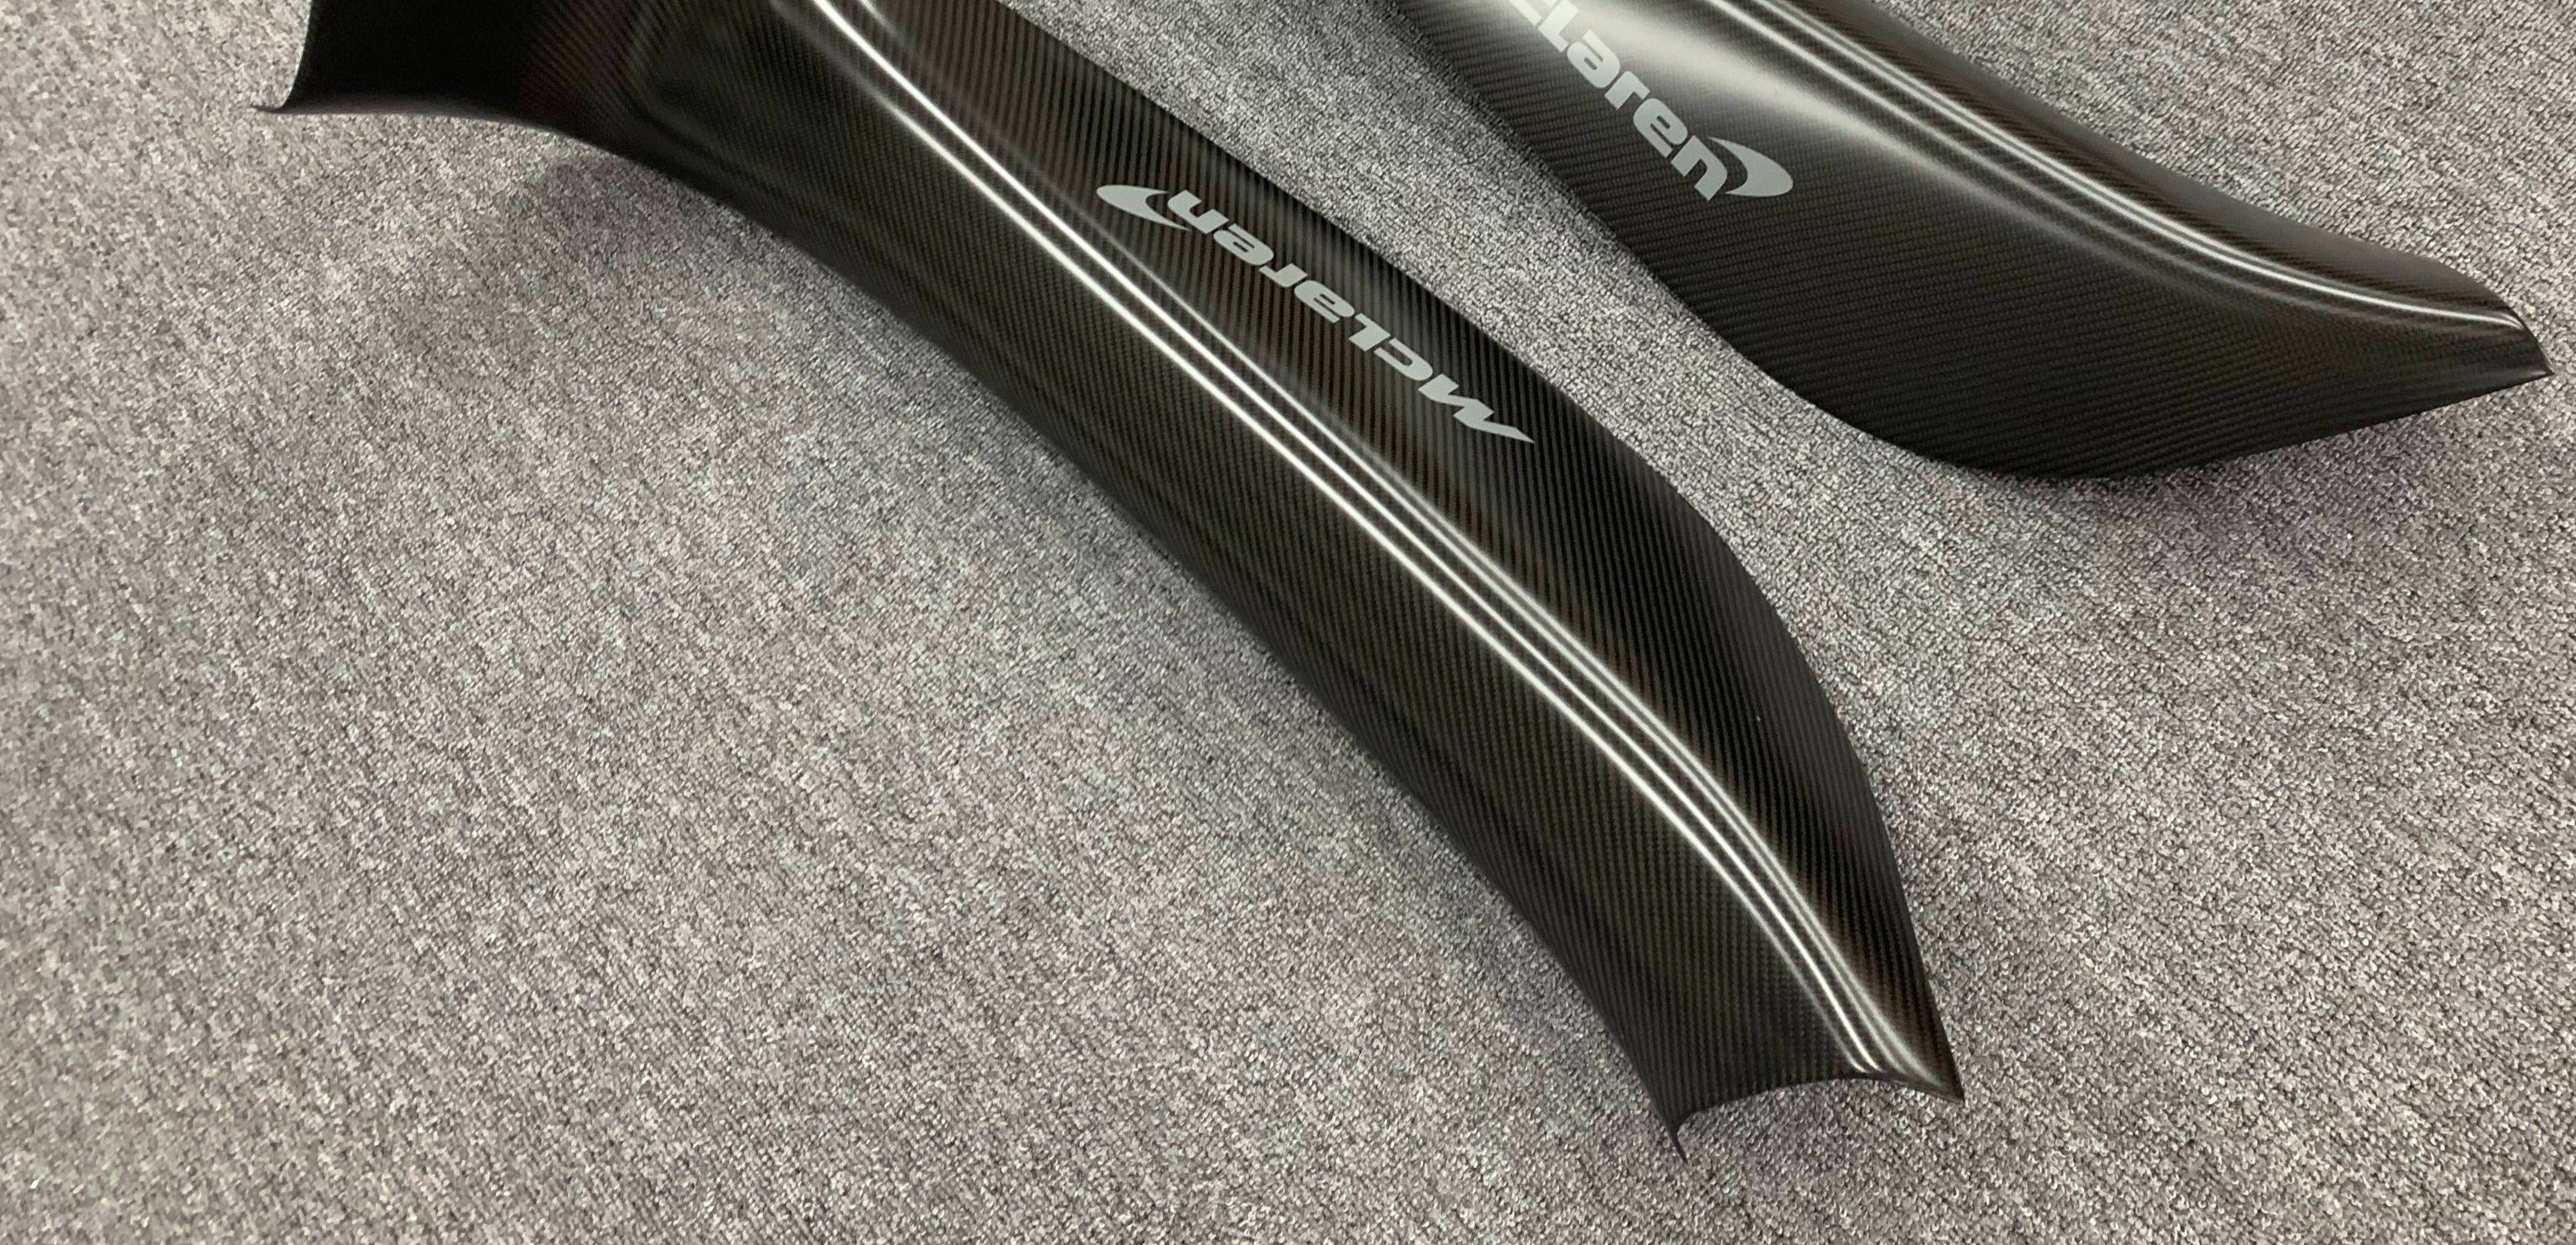 McLaren GT Carbon Fiber Door Sill